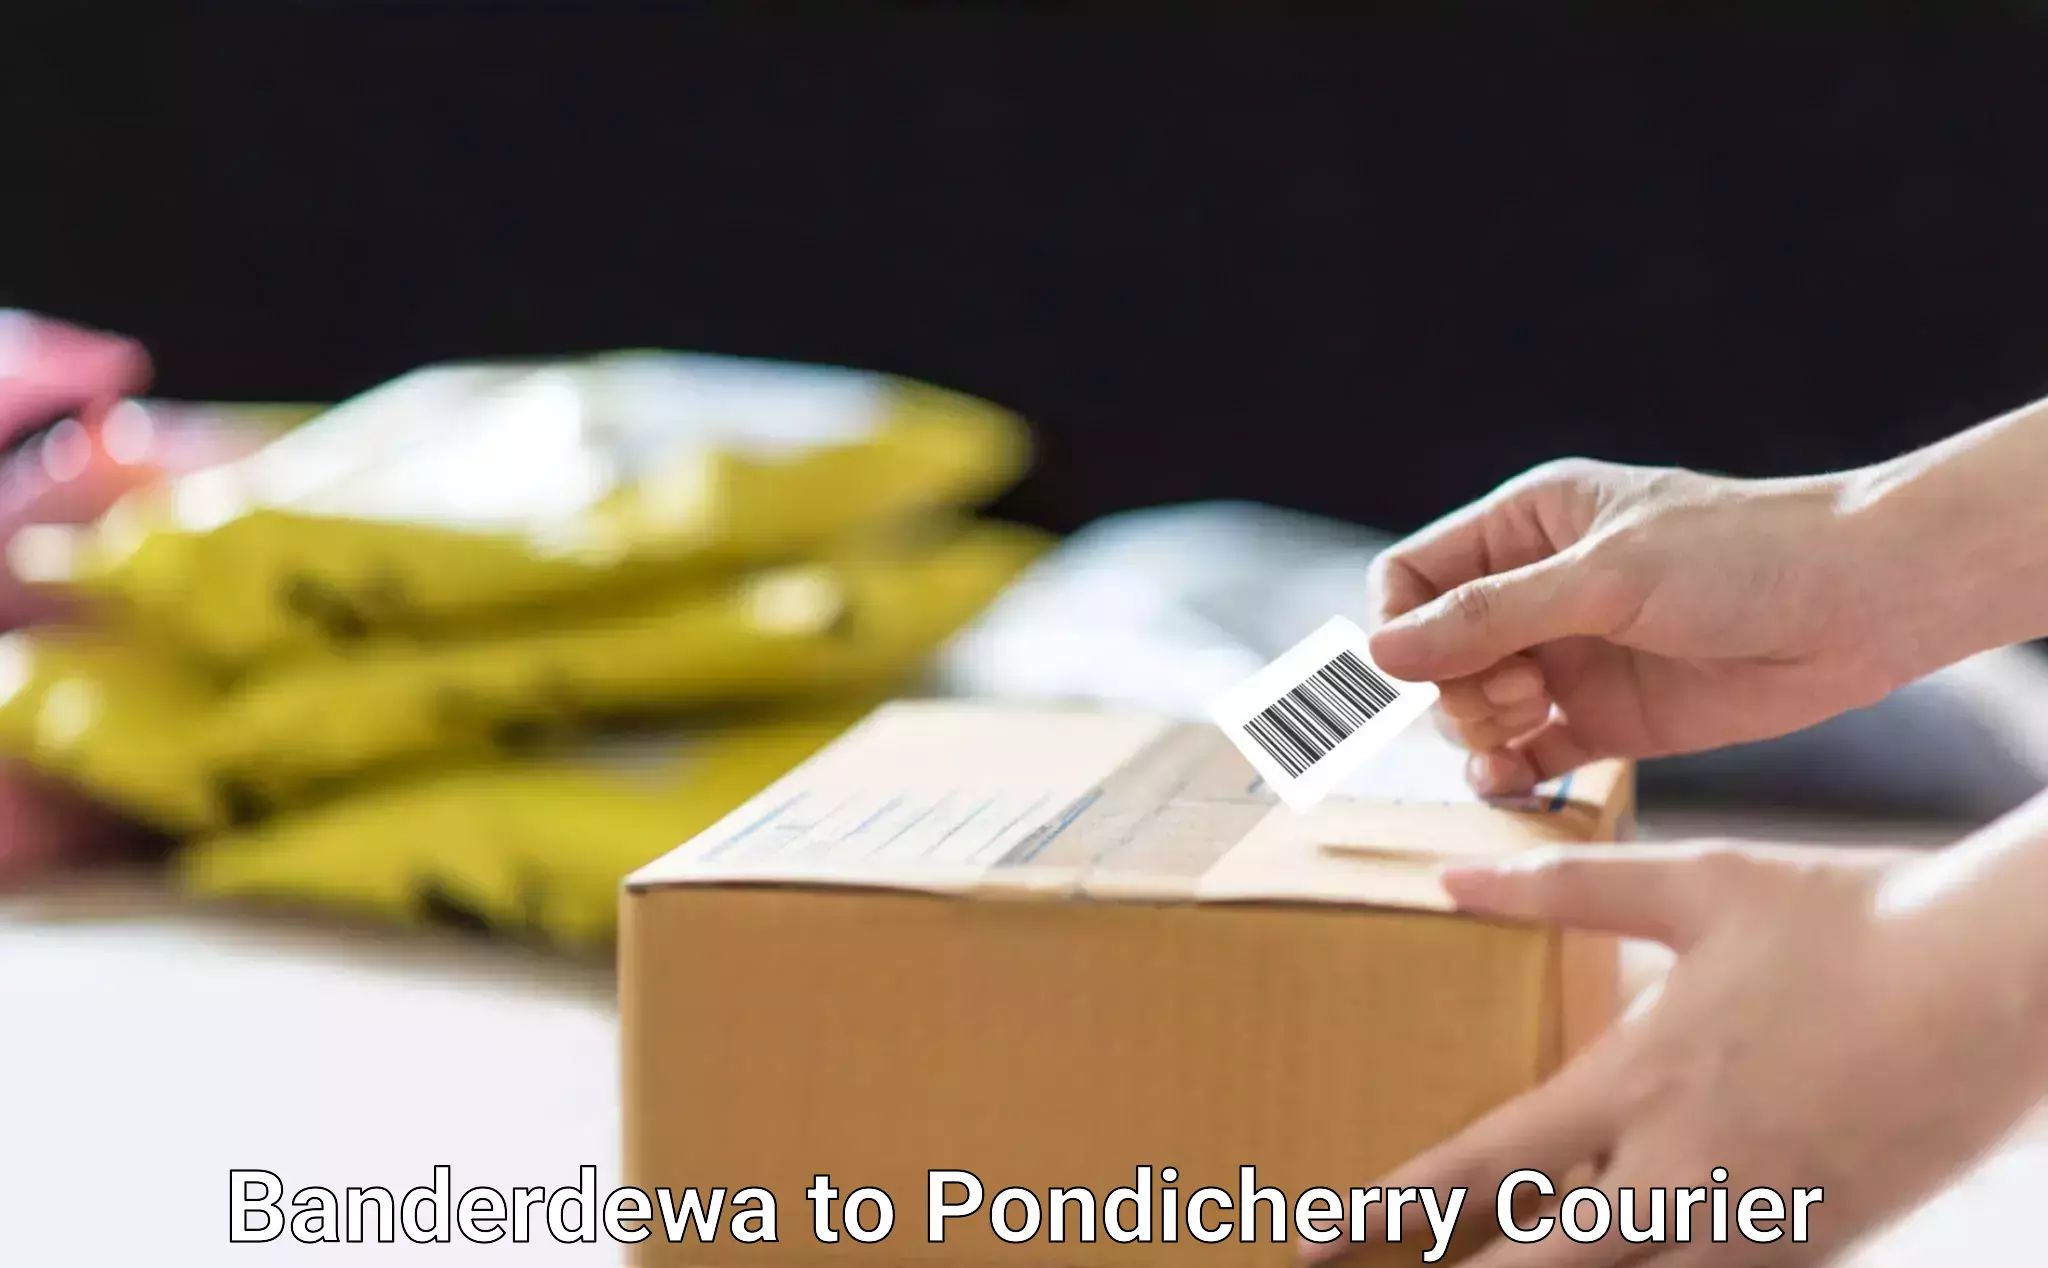 Efficient parcel delivery Banderdewa to Pondicherry